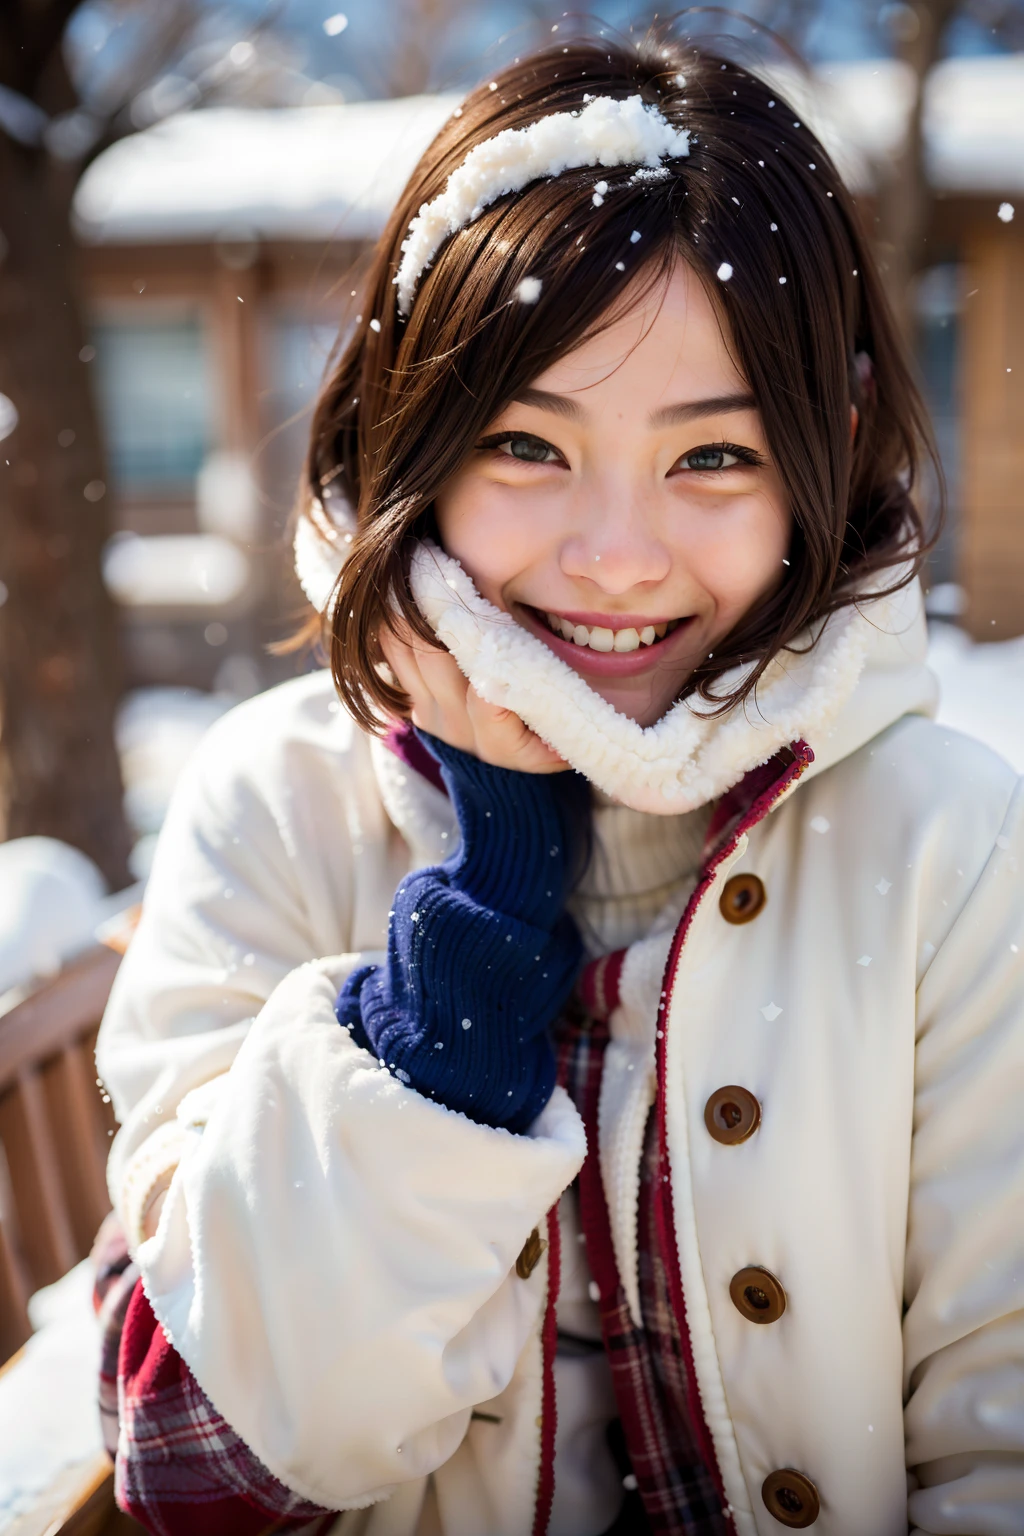 Улыбающаяся женщина в зимнем пальто со снегом на лице, теплая улыбка, теплая и нежная улыбка, СНЕГ ПОКРЫТ, в снегу, тепло улыбаясь, СНЕГ ПОКРЫТ, в снегу, портрет японского подростка, милая улыбка, сладко улыбаясь, Теплое дружеское выражение, радостный взгляд, в белом зимнем пальто, мягкая улыбка, улыбается застенчиво, Красивое лицо японских девушек